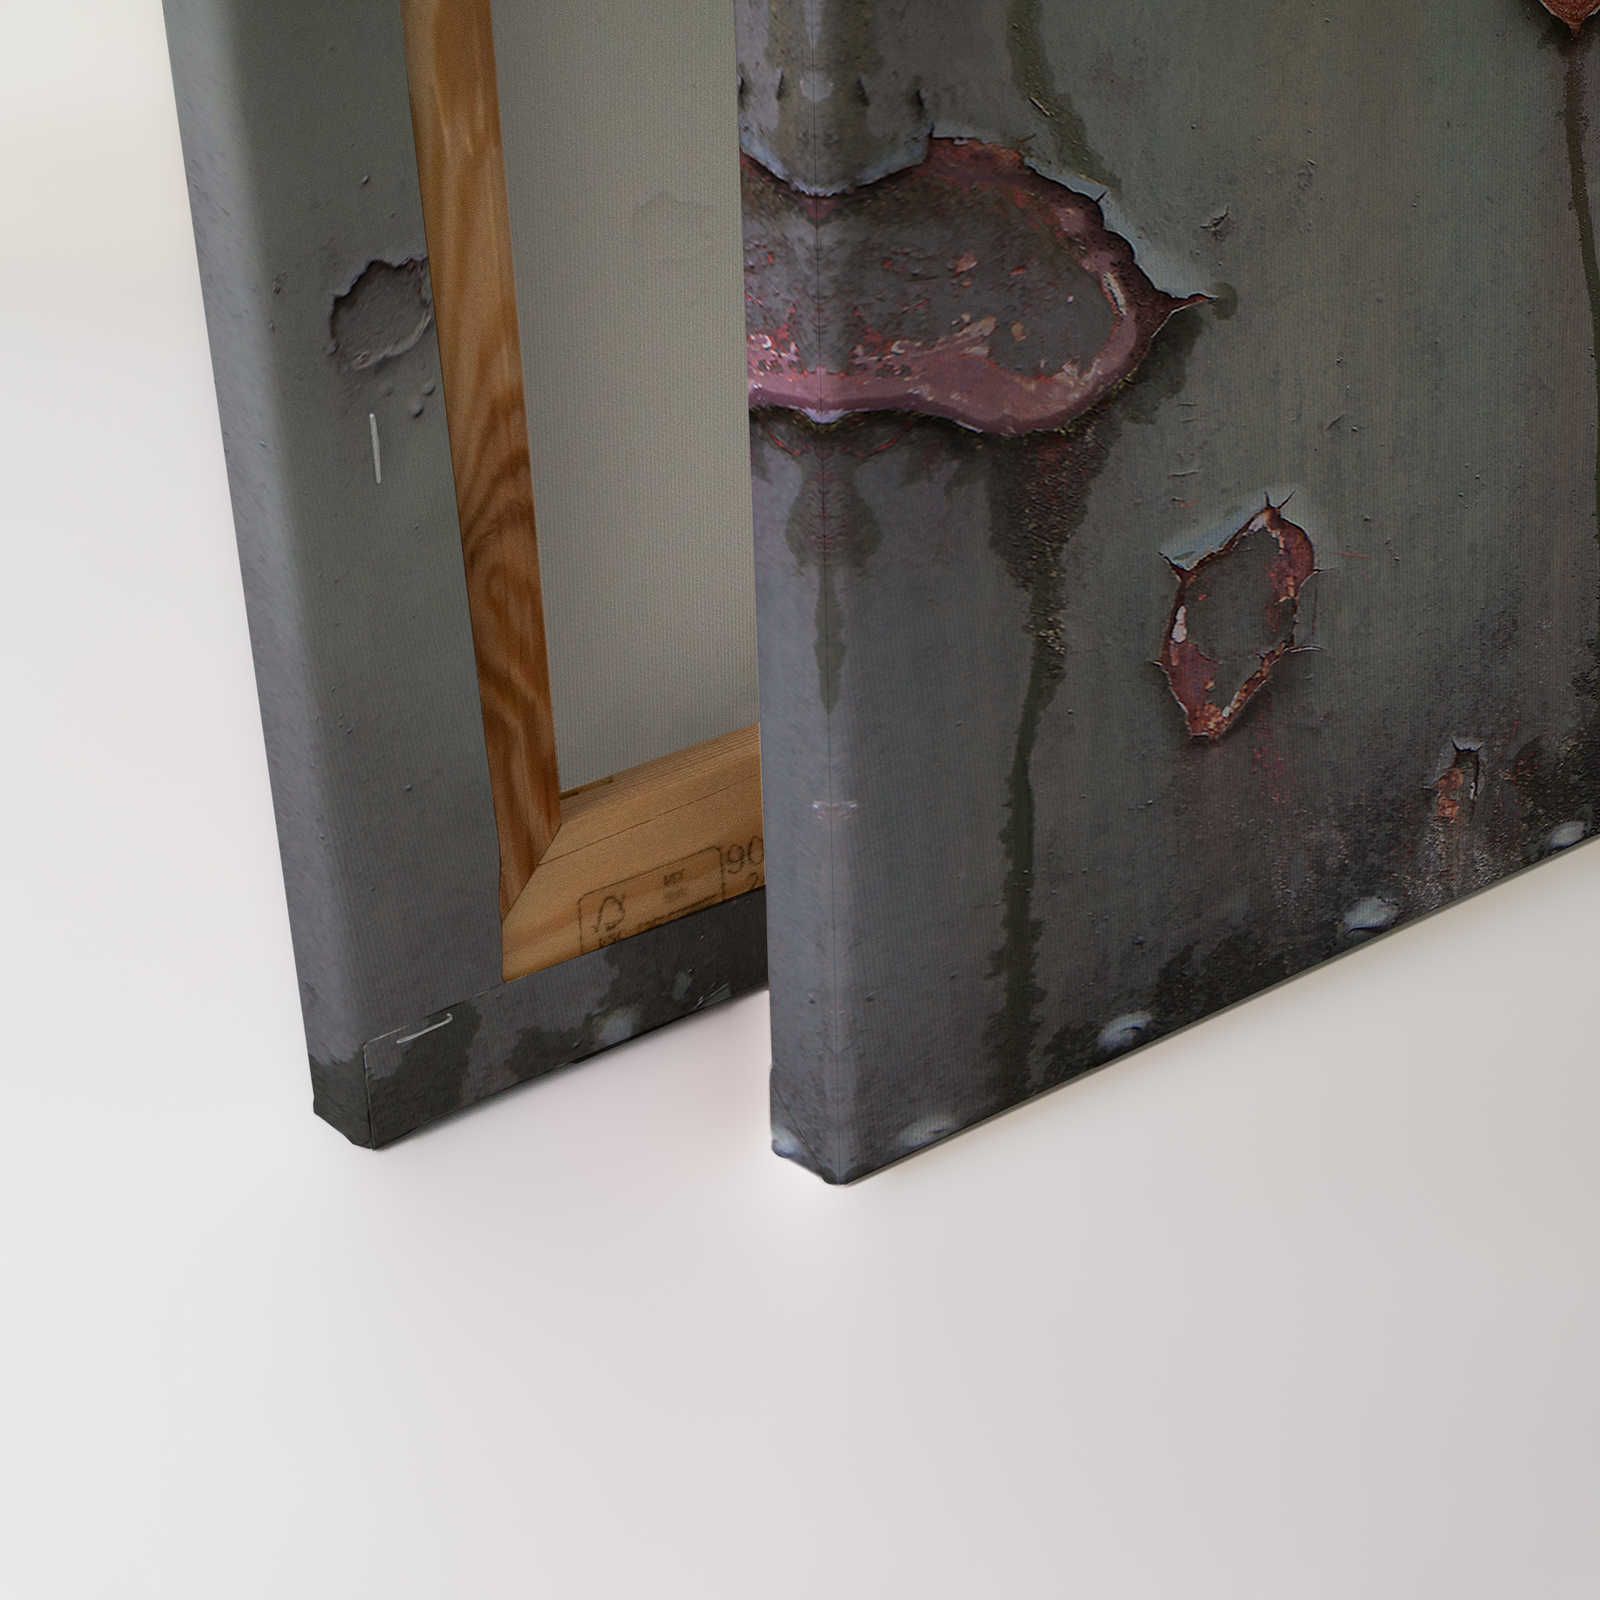             Metalen wand - Canvas schilderij Industrieel met roest & used look - 0.90 m x 0.60 m
        